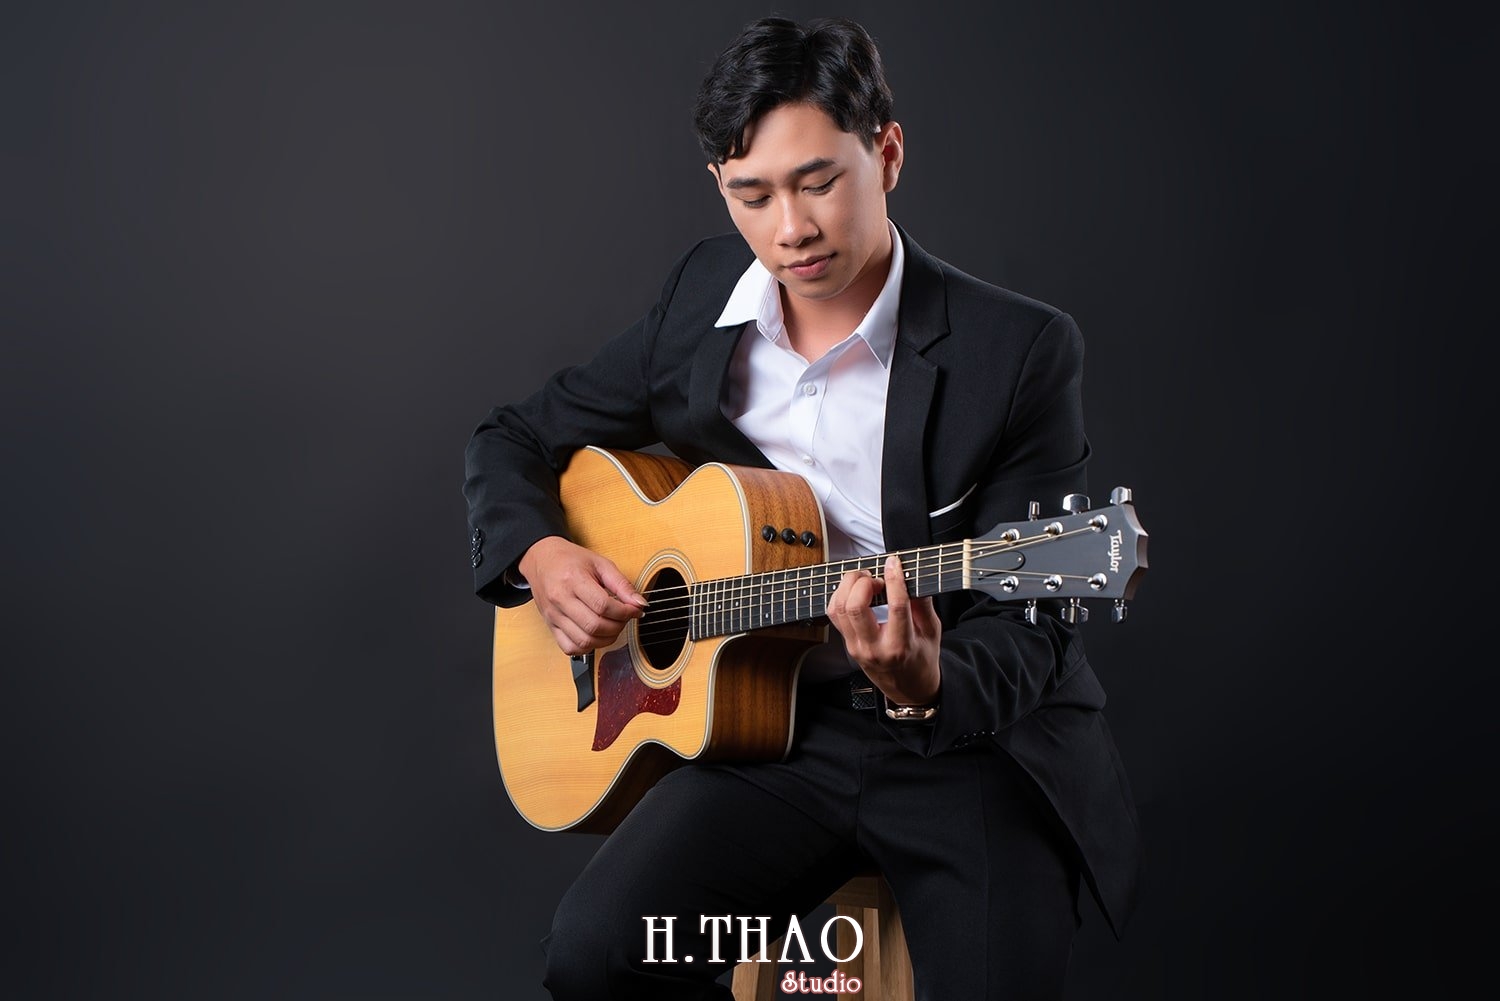 Anh profile 21 - Tổng hợp ảnh profile nghề nghiệp Tháng 3 - HThao Studio